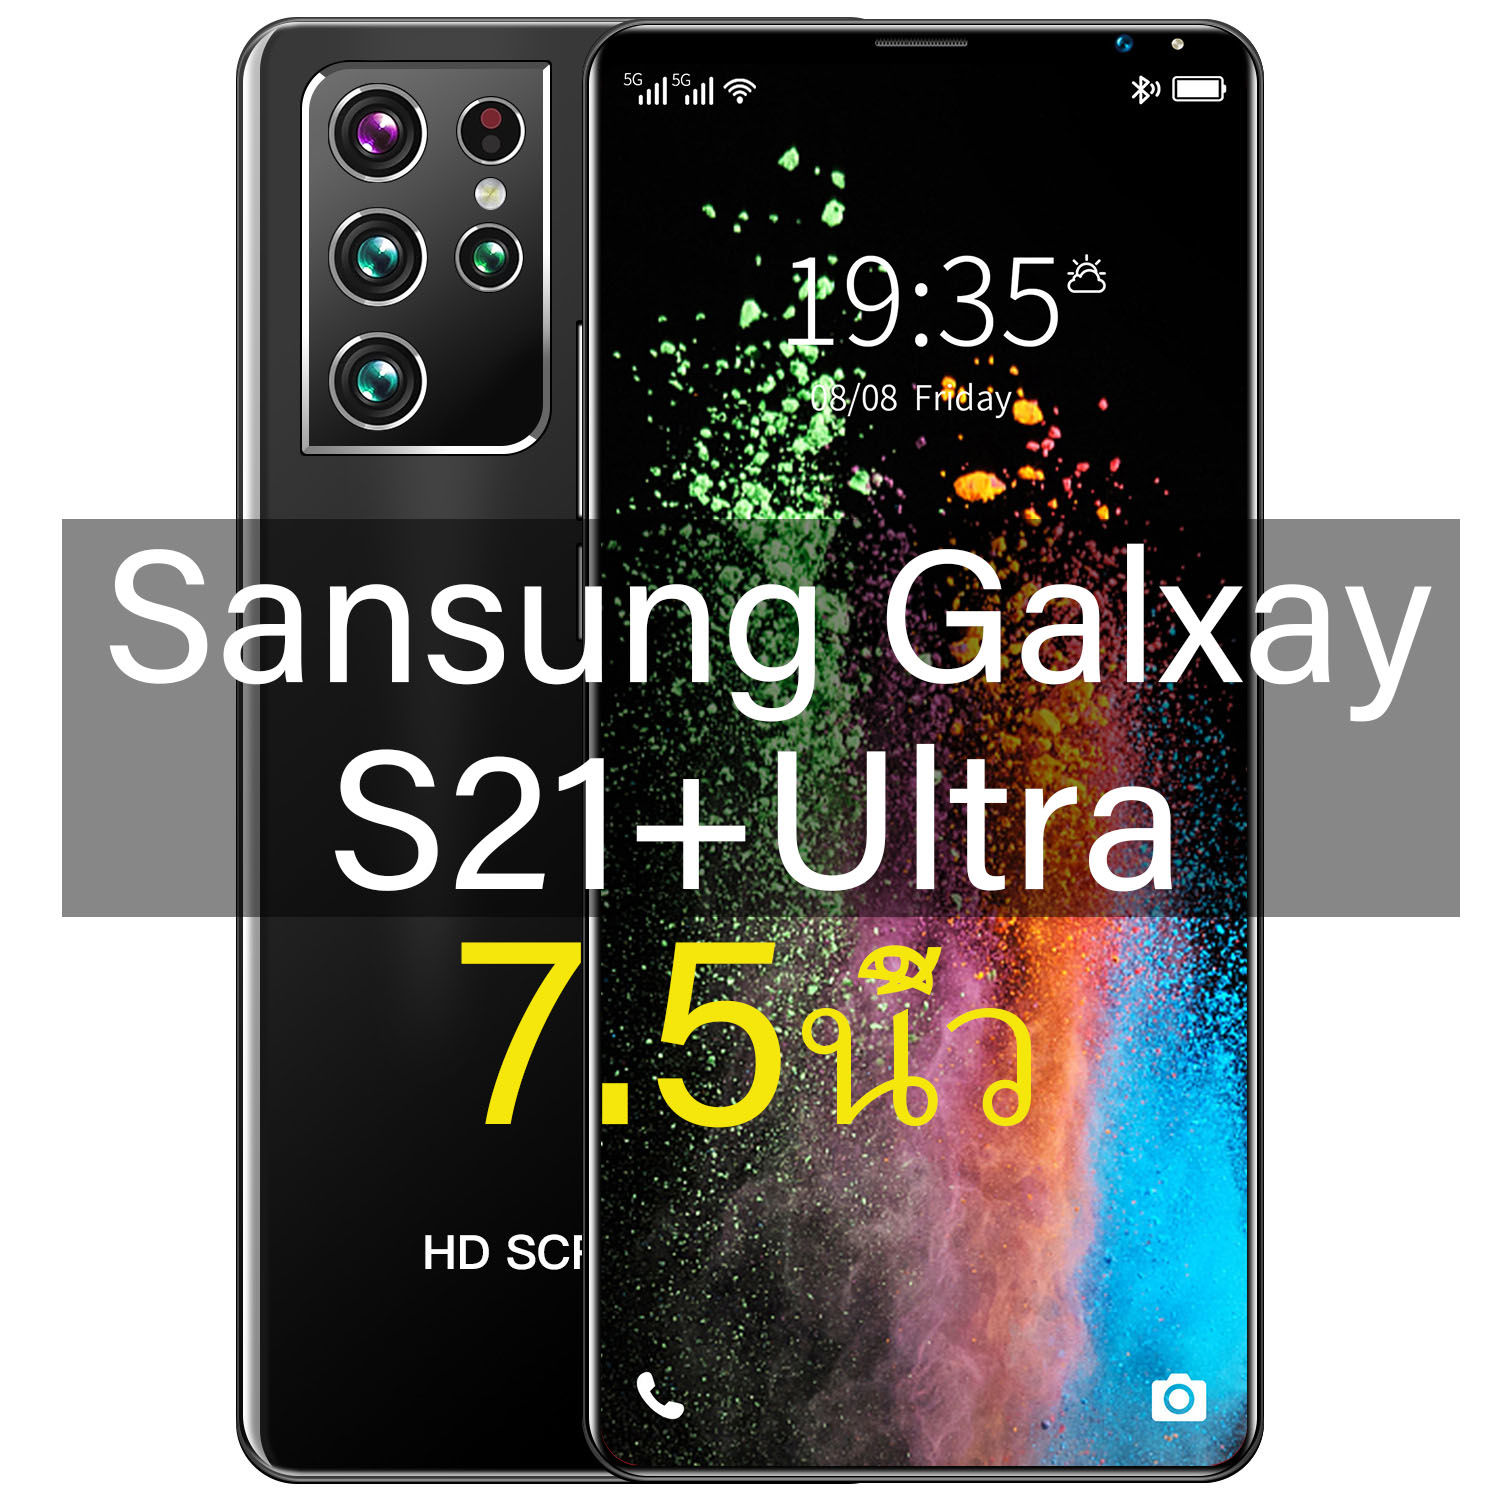 โทรศัพท์มือถือ Sansung Galaxy S21+Ultra สมาร์ทโฟน 7.5นิ้ว RAM16GB ROM512GB แบตเตอรี่ 6800MAh สแกนลายนิ้วมือ ปลดล็อคใบหน้า สเปคแท้/ราคาถูก เครื่องแท้ โทรศัพท์มือถือ